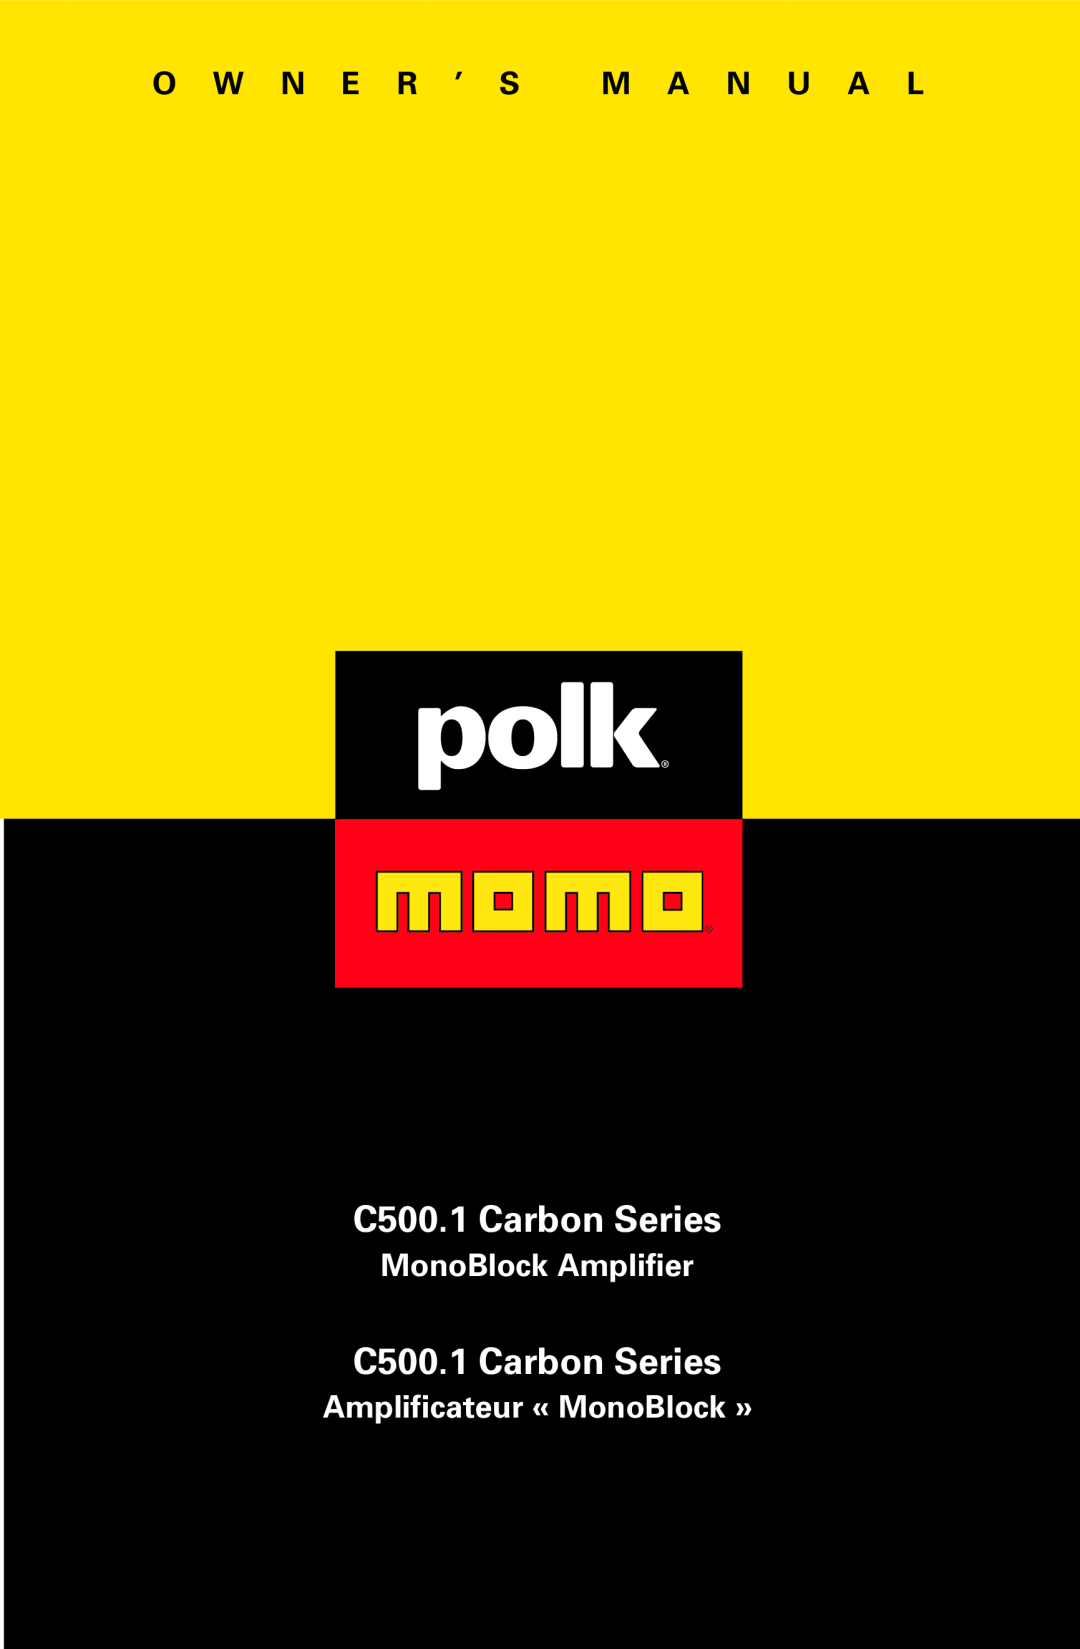 Polk Audio owner manual O W N E R ’ S M A N U A L, C500.1 Carbon Series, MonoBlock Amplifier 